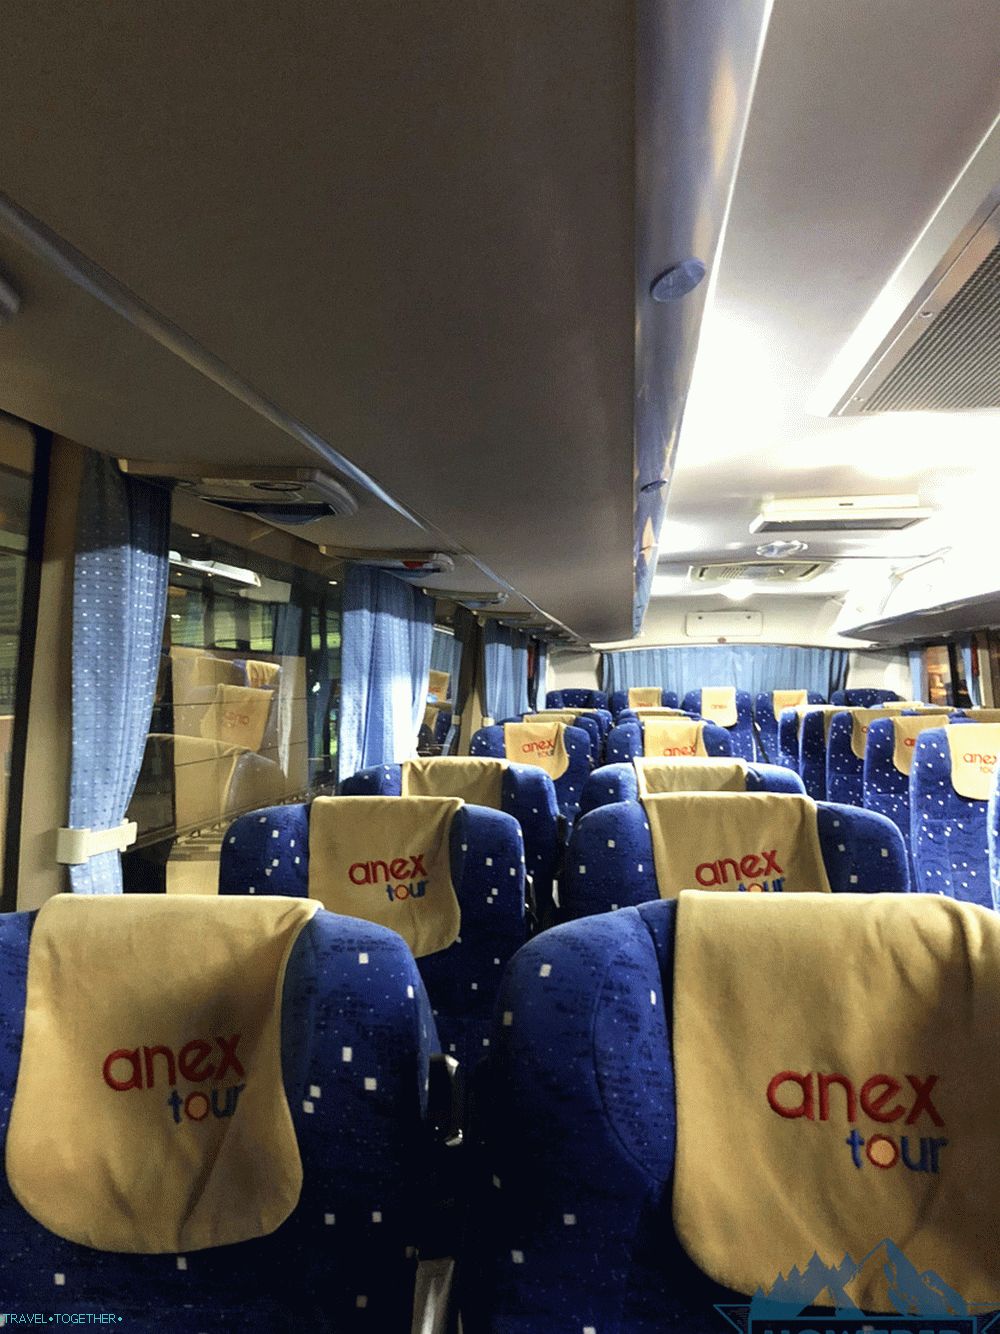 Prehliadka autobusu Aneks